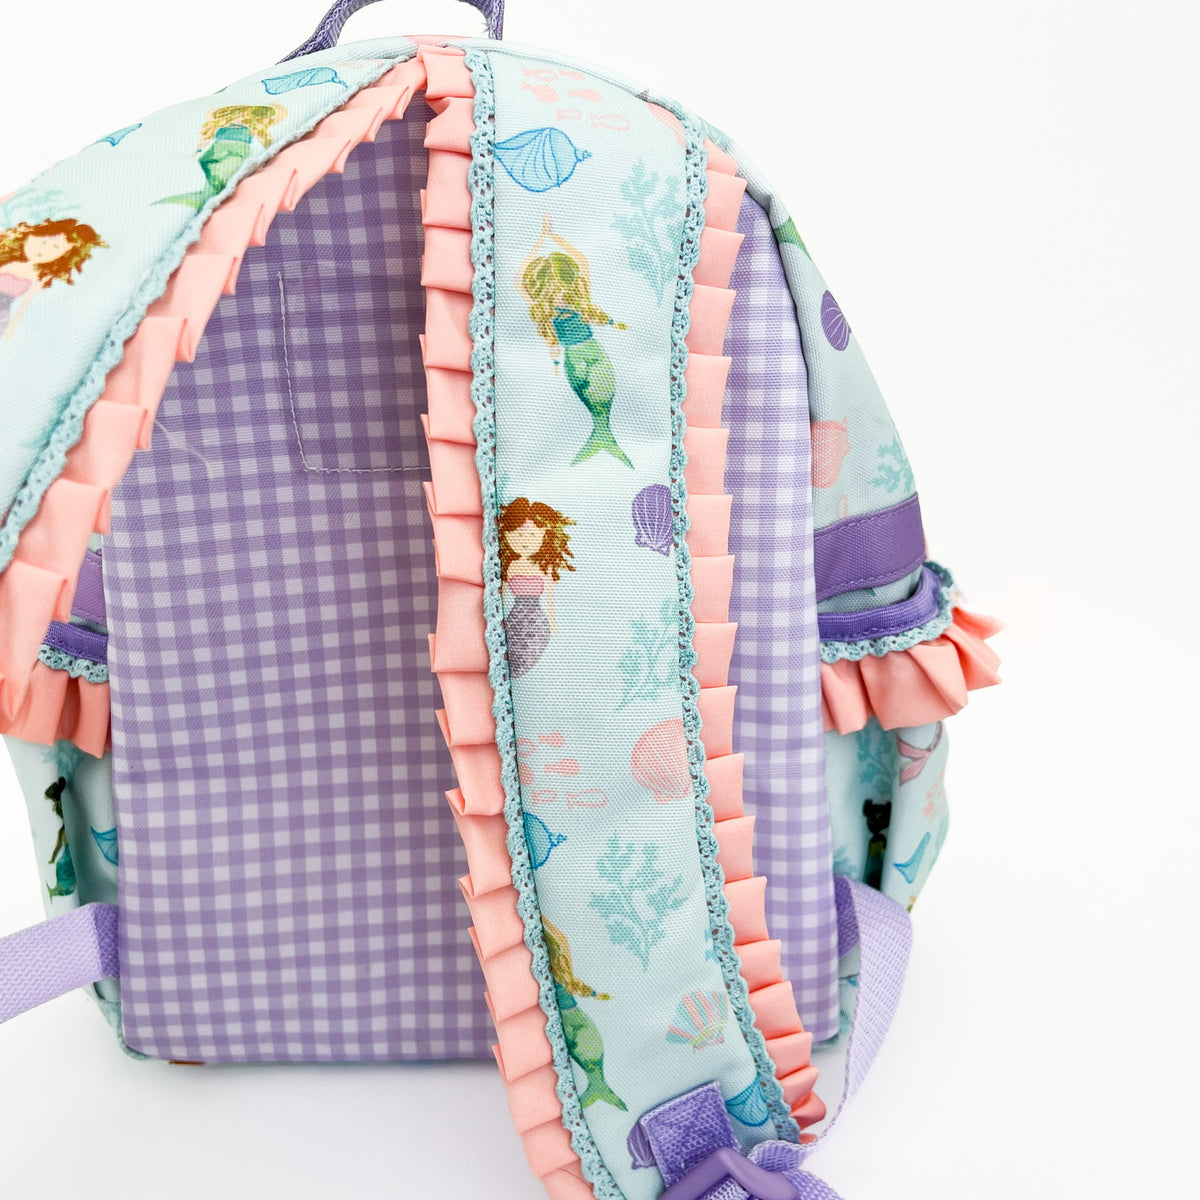 Enchanted Mermaid Backpack